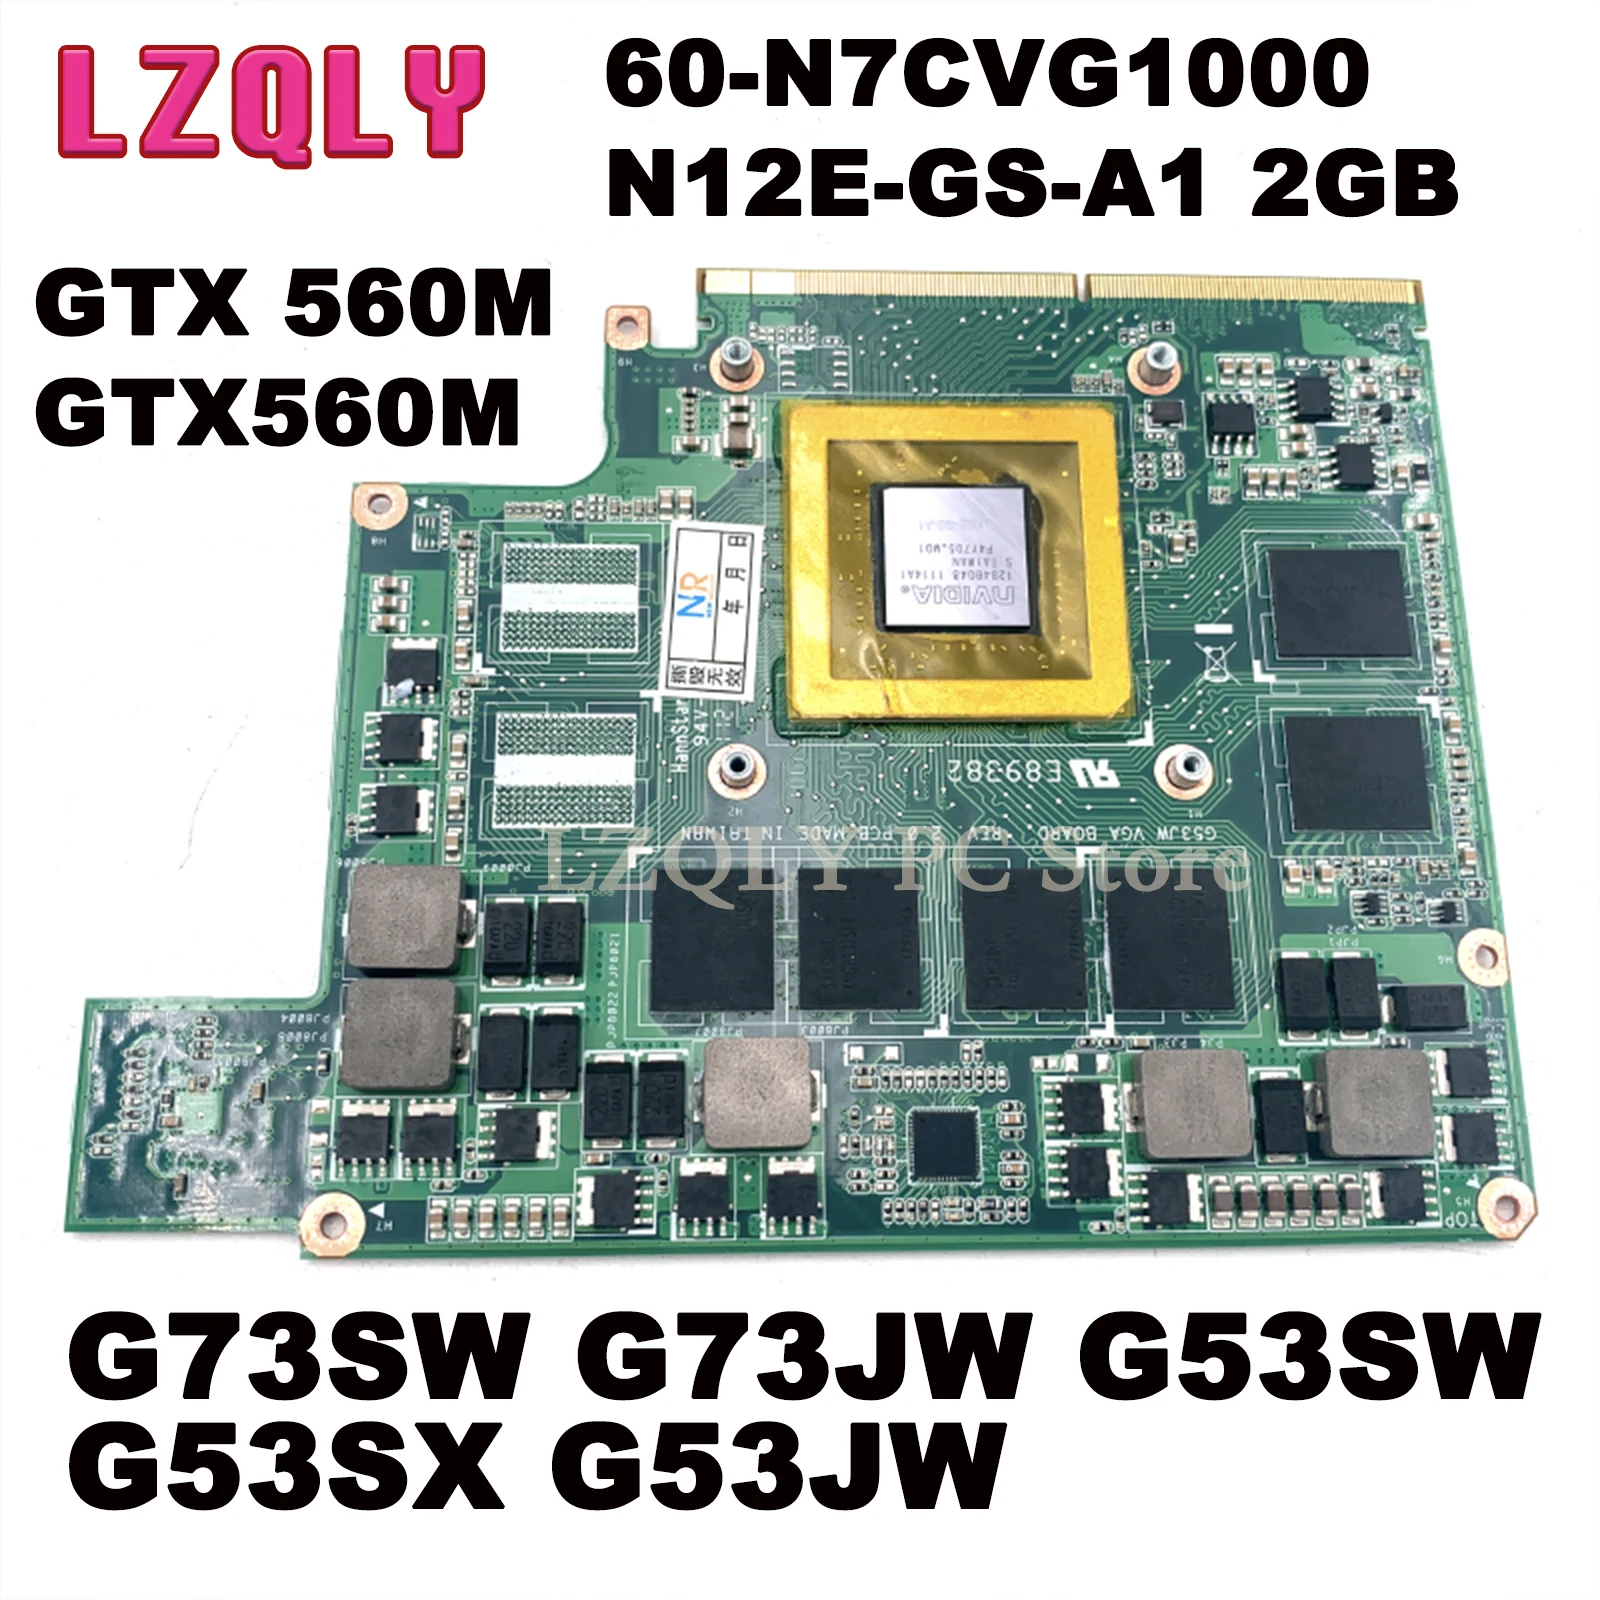 LZQLY For ASUS G73SW G73JW G53SW G53SX G53JW VGA board GTX 560M GTX560M 60-N7CVG1000 N12E-GS-A1 2GB DDR5 video card